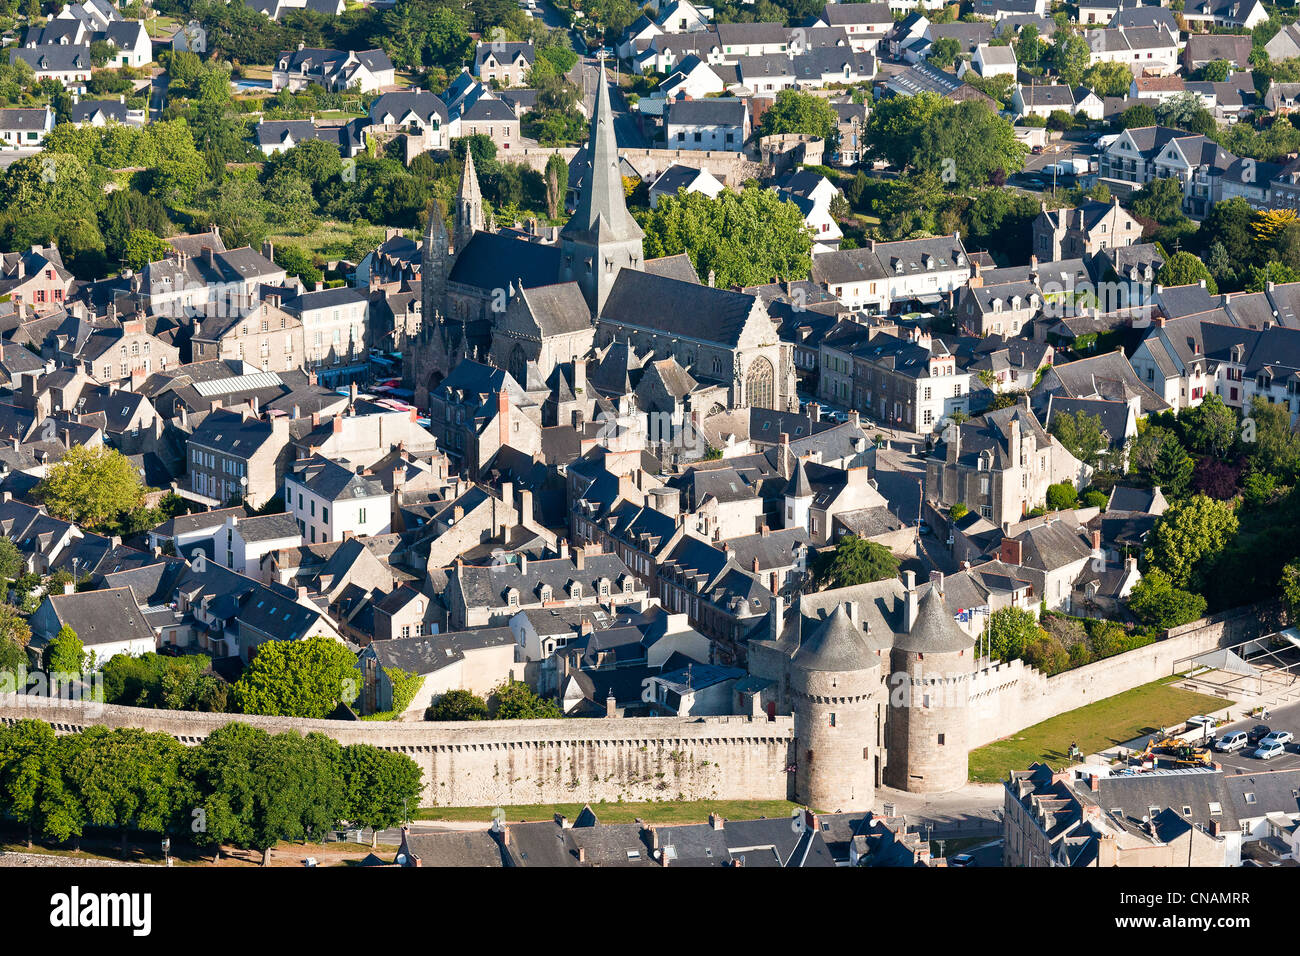 France, Loire-Atlantique, Guérande, la porte Saint-Michel (1440-1450) est l'entrée principale de la cité médiévale (Photographie aérienne) Banque D'Images